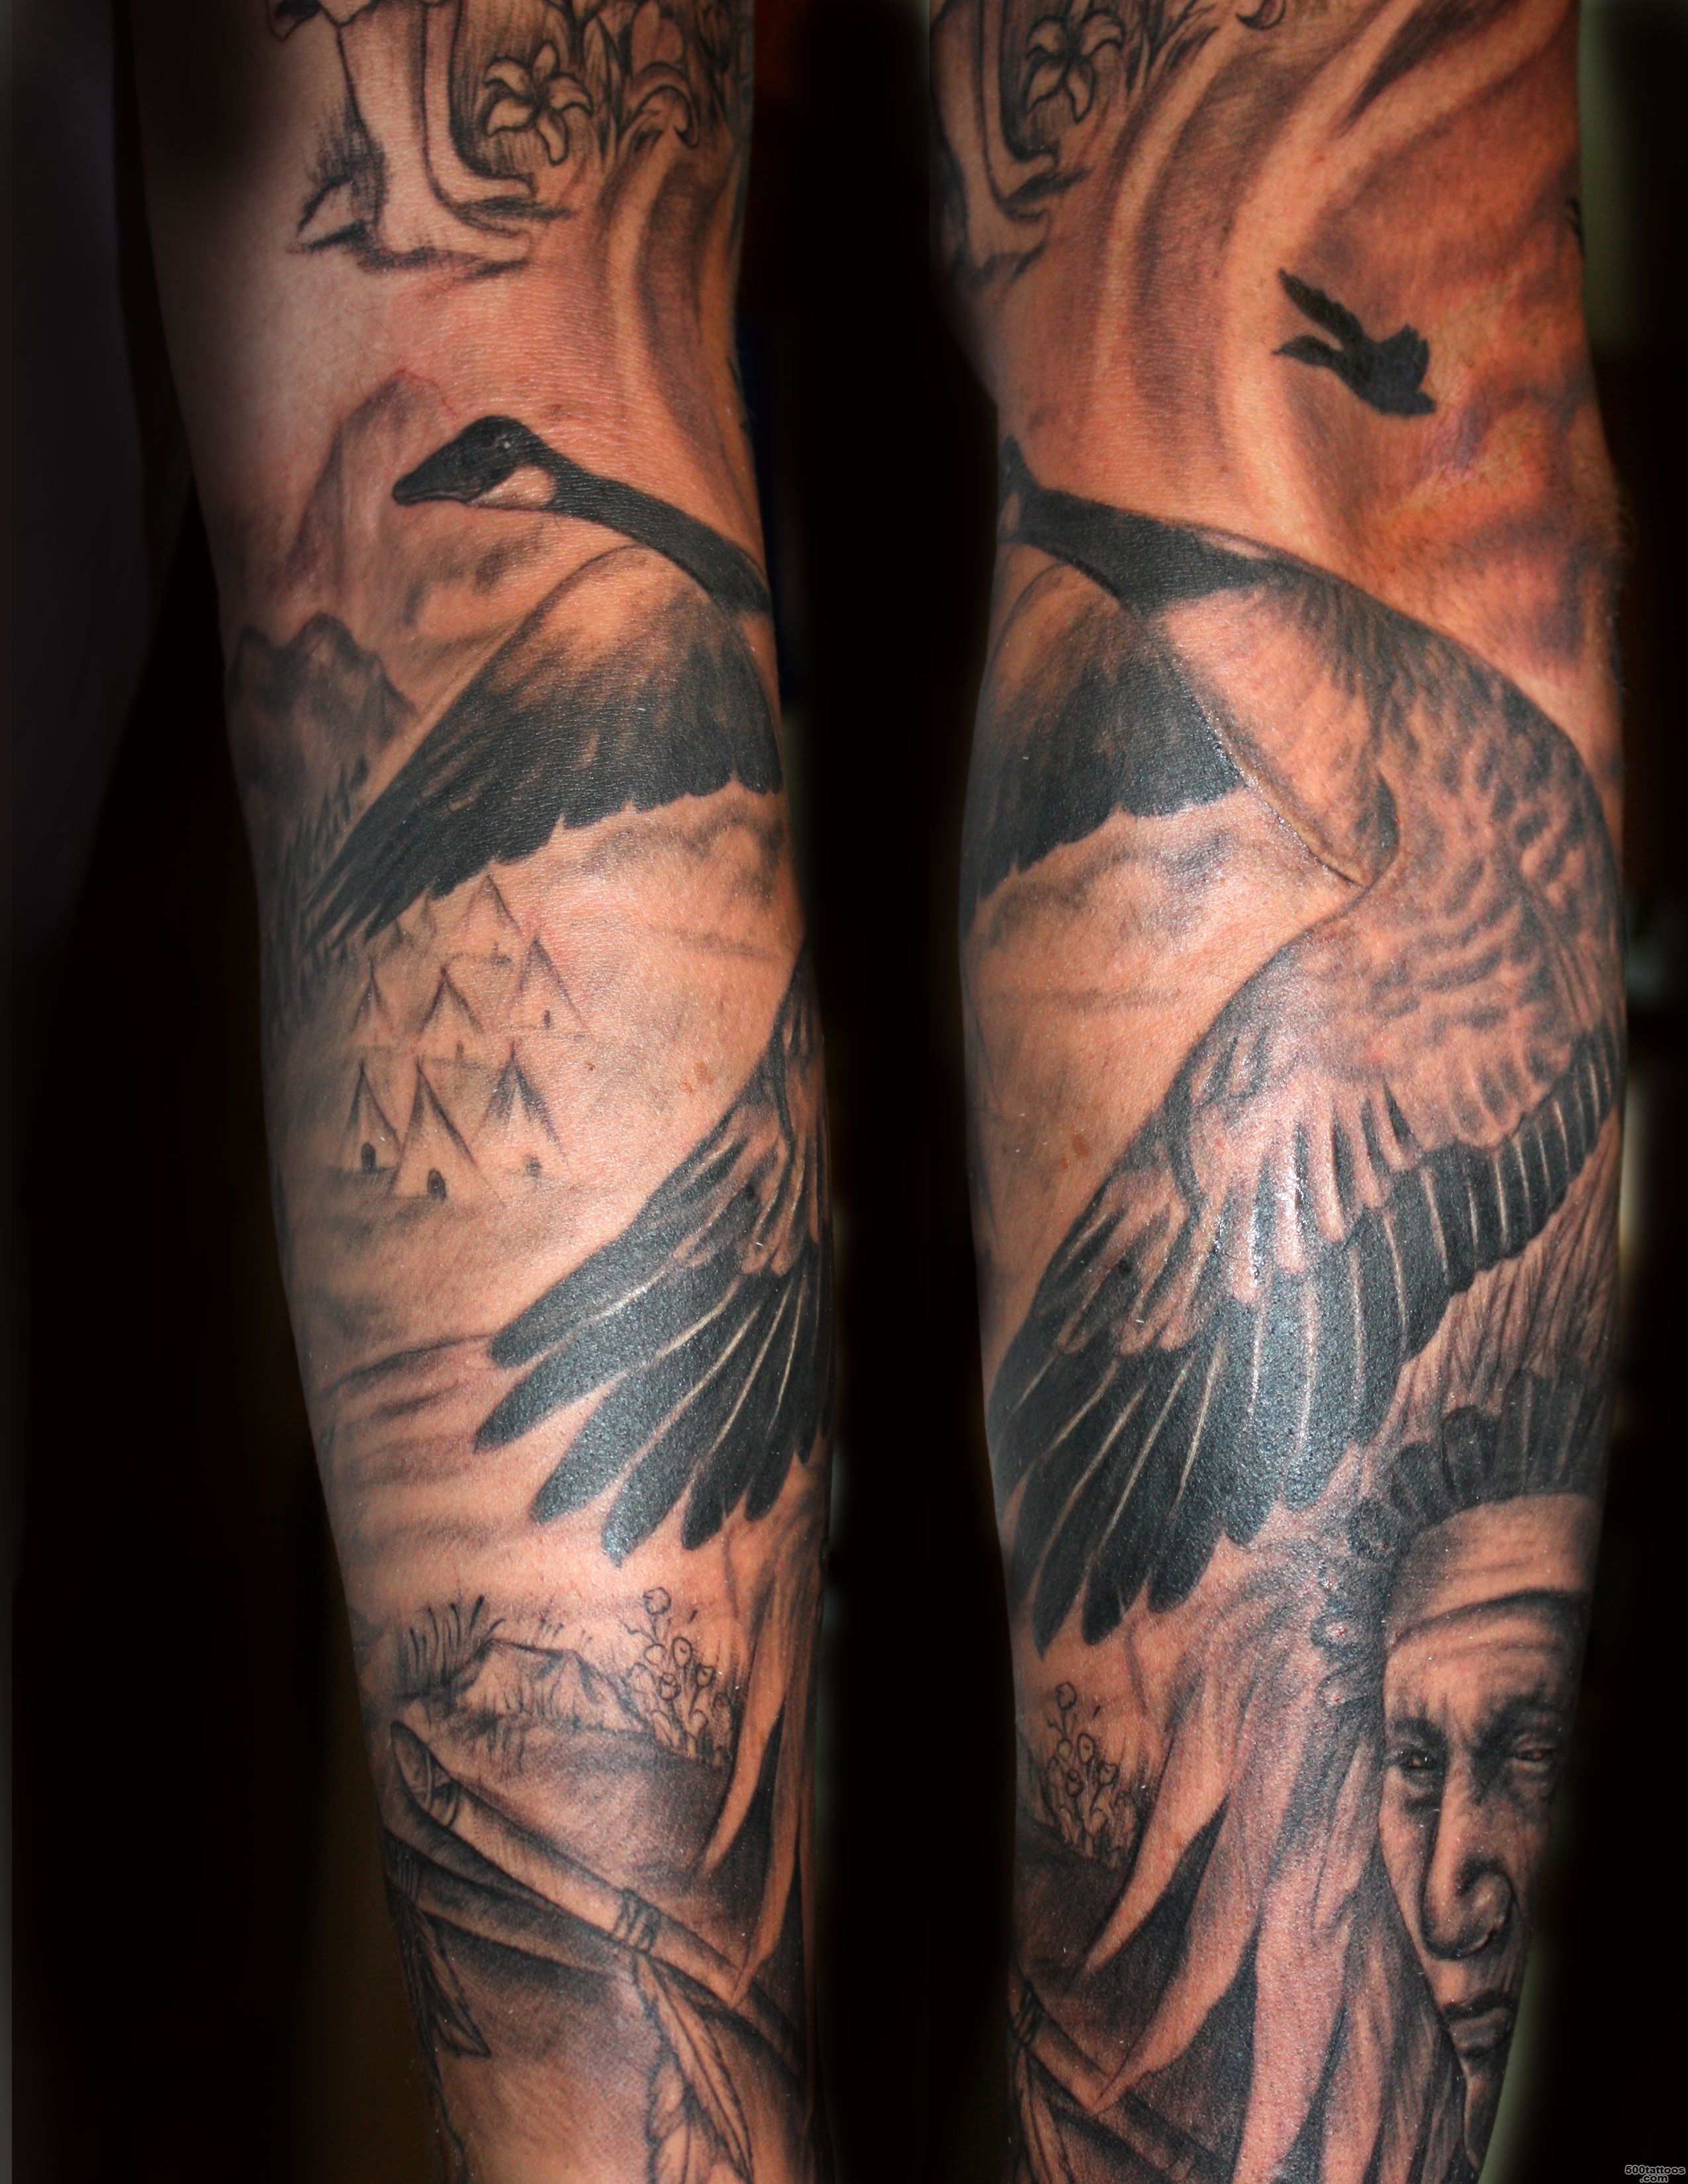 Geese Bird Tattoo Design  Tattoobite.com_13